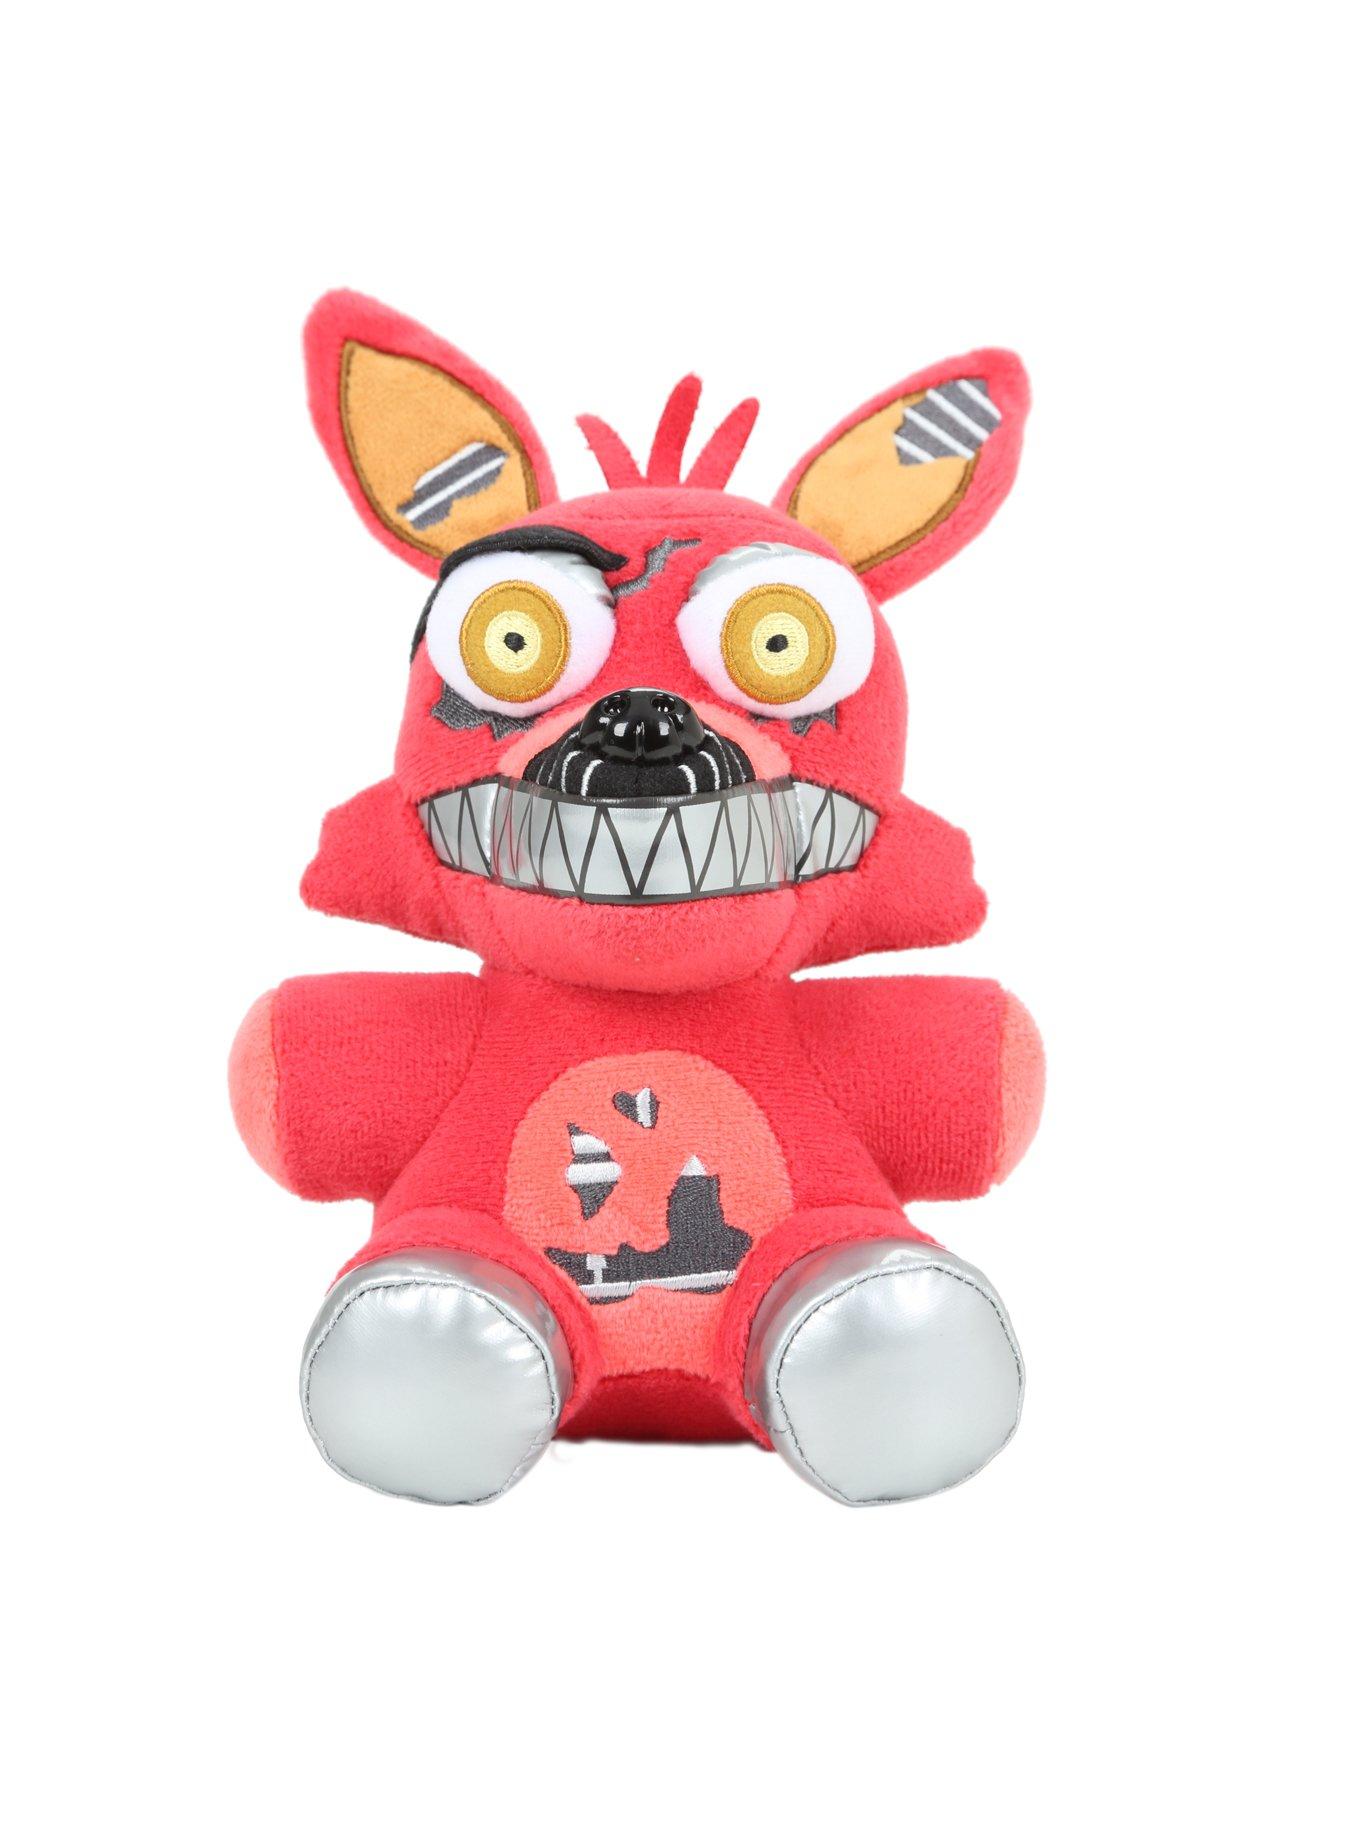 Buy Animatronic Foxy Plush at Funko.